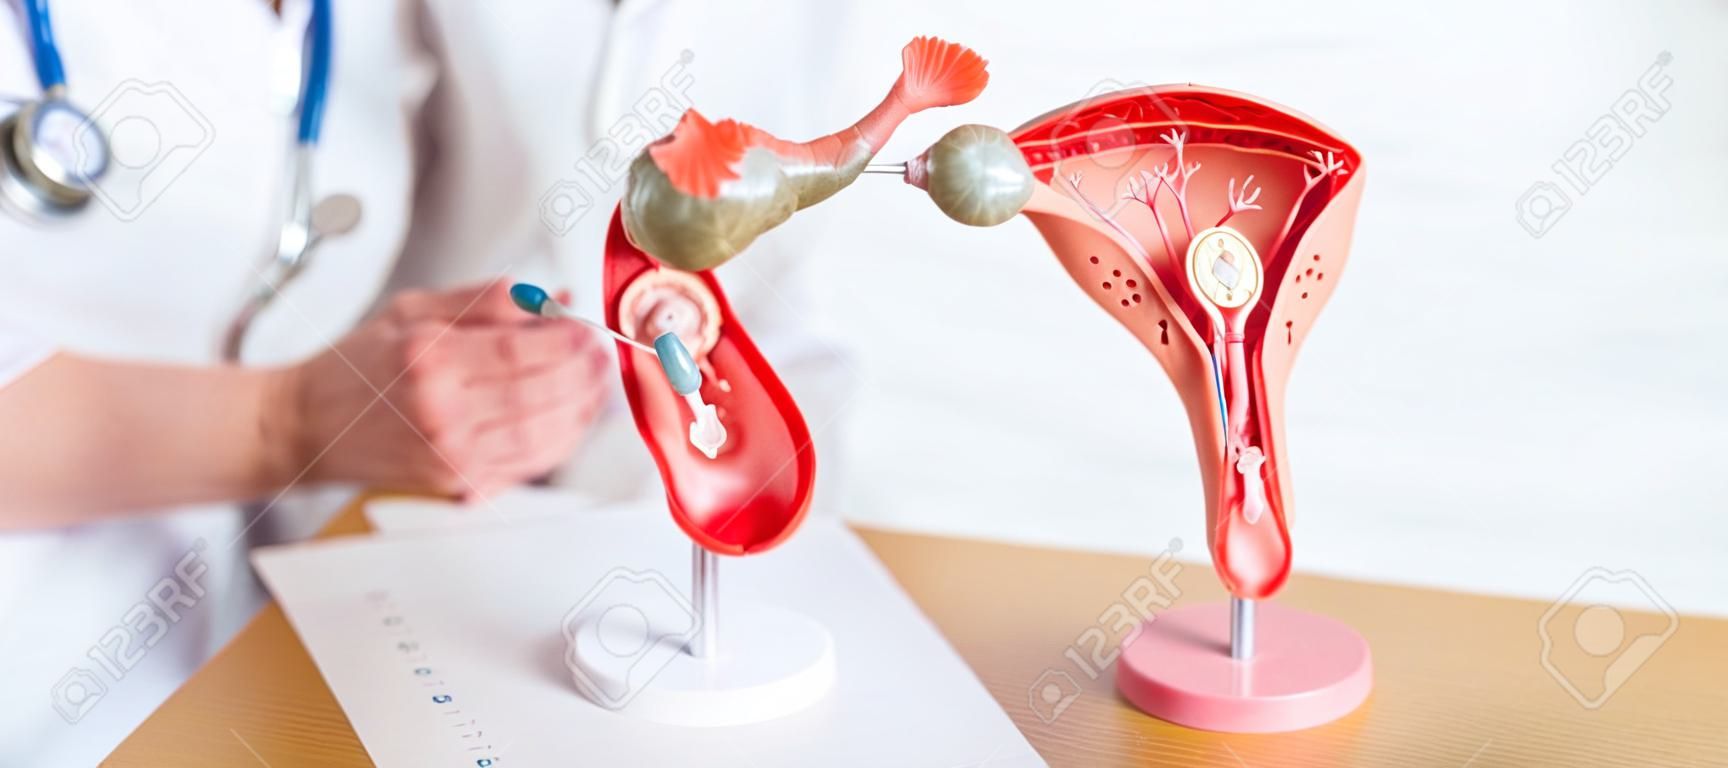 Lekarz z macicą i jajnikami model anatomiczny rak jajnika i szyjki macicy zaburzenie szyjki macicy endometrioza histerektomia mięśniaki macicy układ rozrodczy koncepcja ciąży i zdrowia